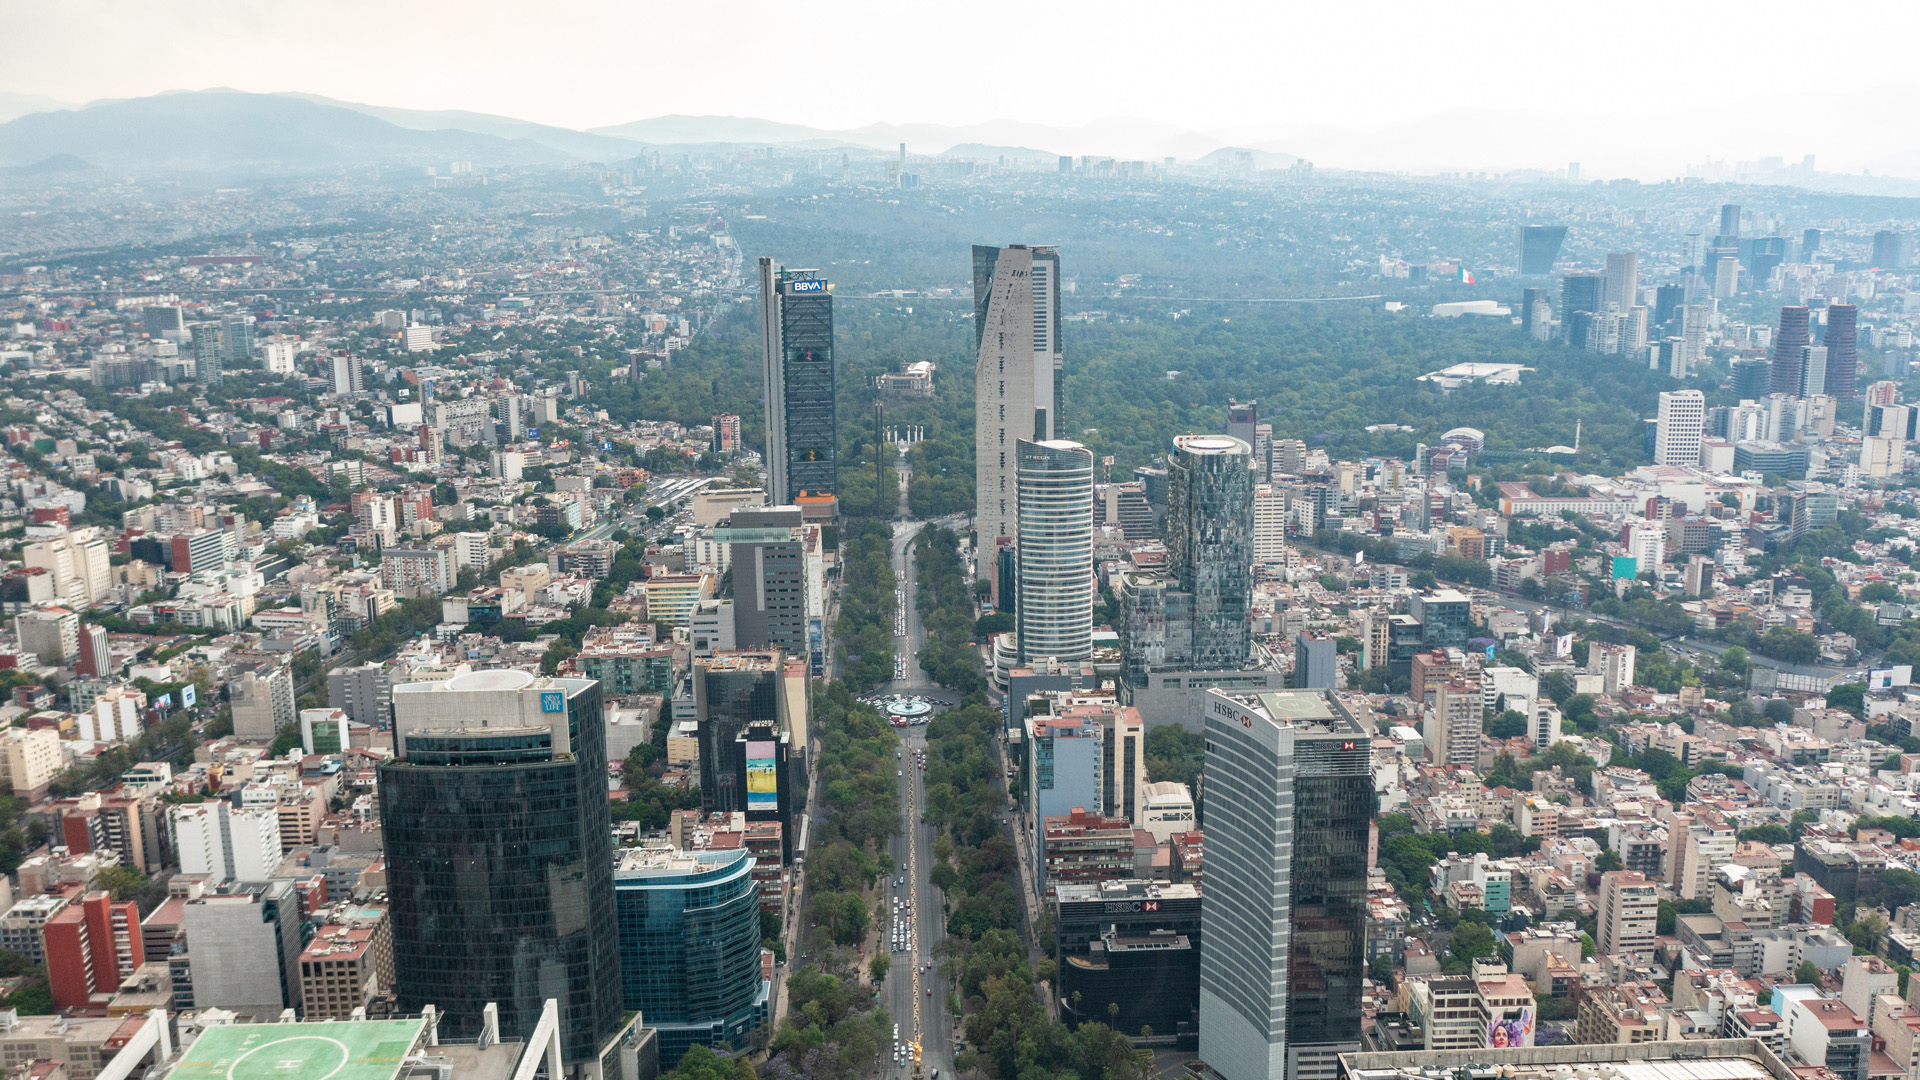 Überblick über Mexikos Hauptstadt Mexiko-City. | picture alliance / Zoonar